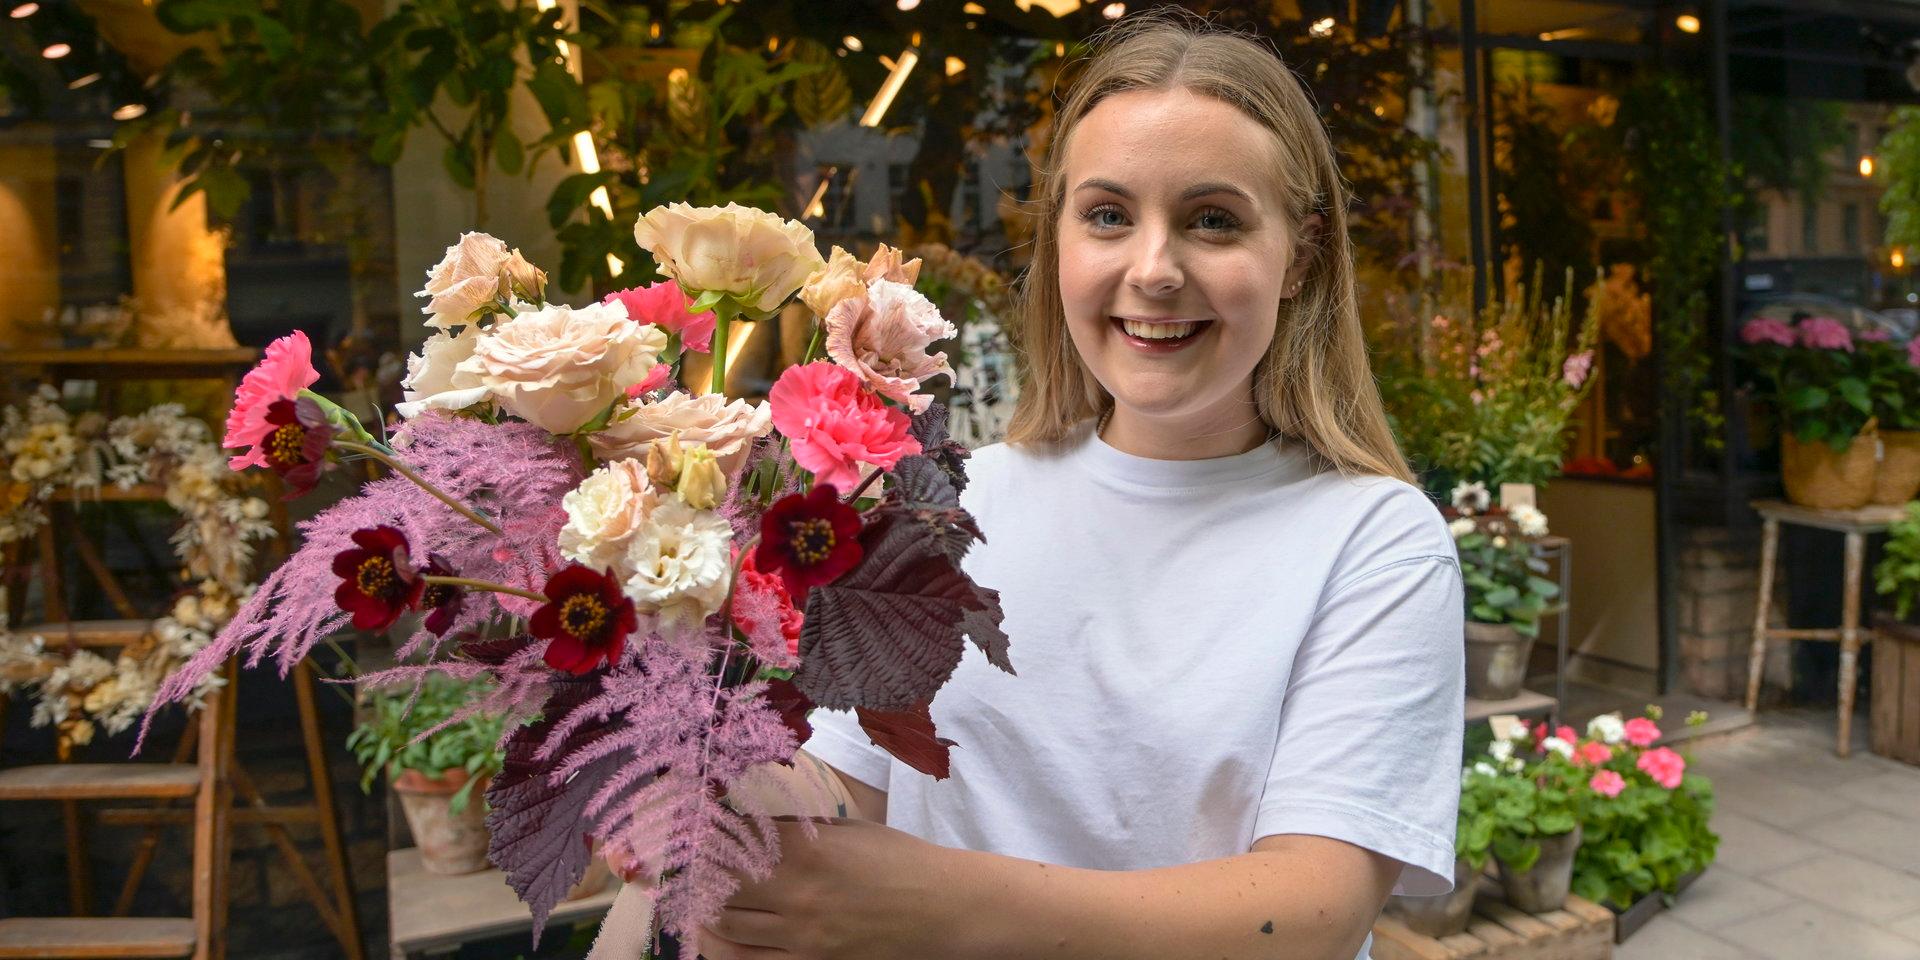 ”Ju tidigare desto bättre” – floristen Sarah Angelsiöö rekommenderar brudpar att börja planera för blomsterarrangemang två-tre månader före bröllopet för att vara säker på att få den florist man vill ha.